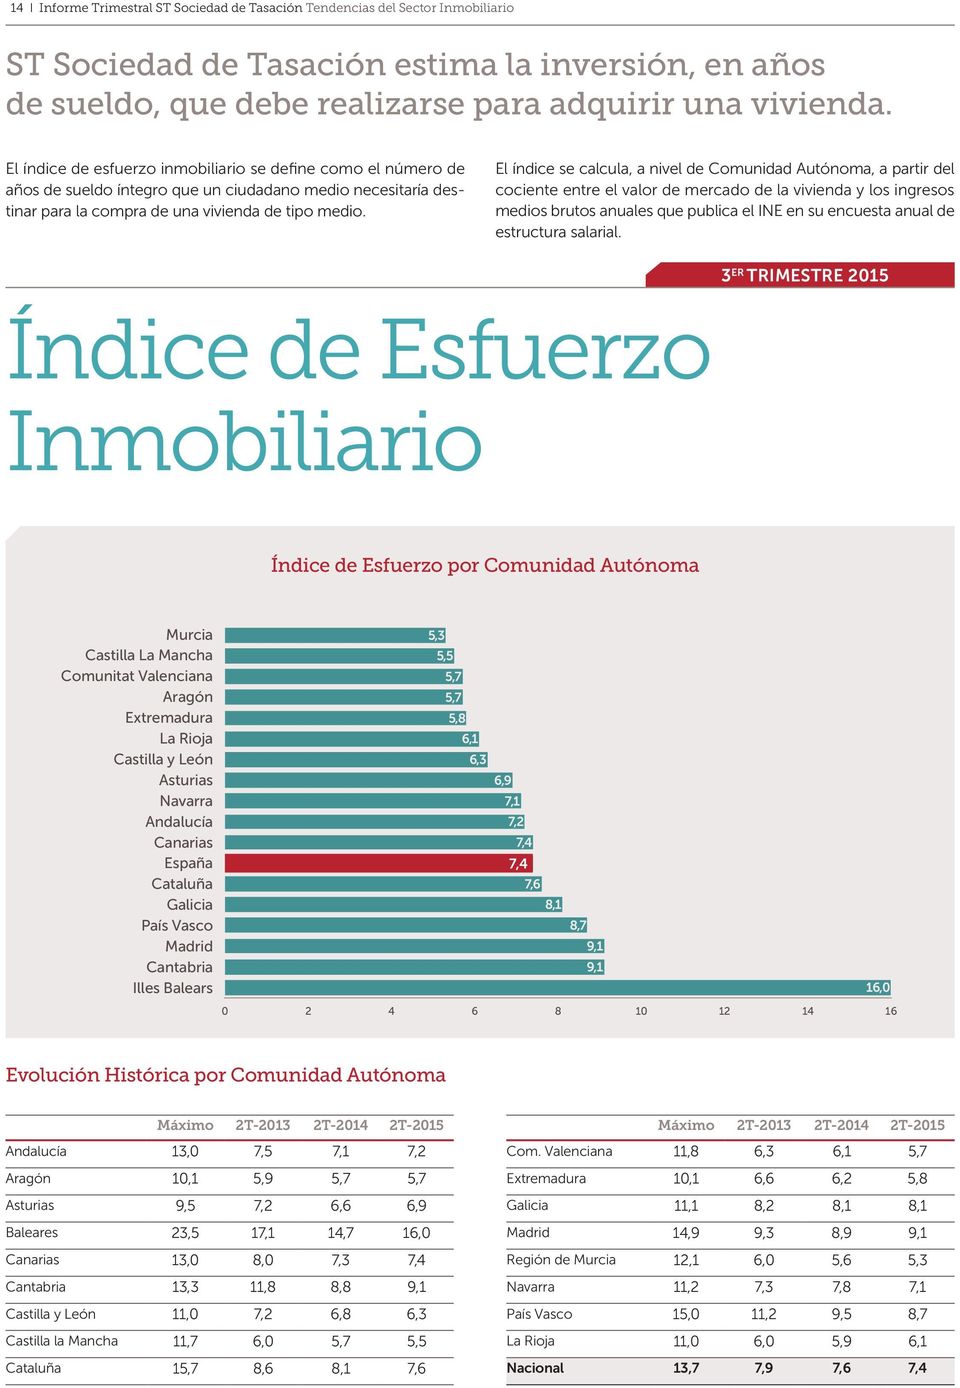 El índice se calcula, a nivel de Comunidad Autónoma, a partir del cociente entre el valor de mercado de la vivienda y los ingresos medios brutos anuales que publica el INE en su encuesta anual de